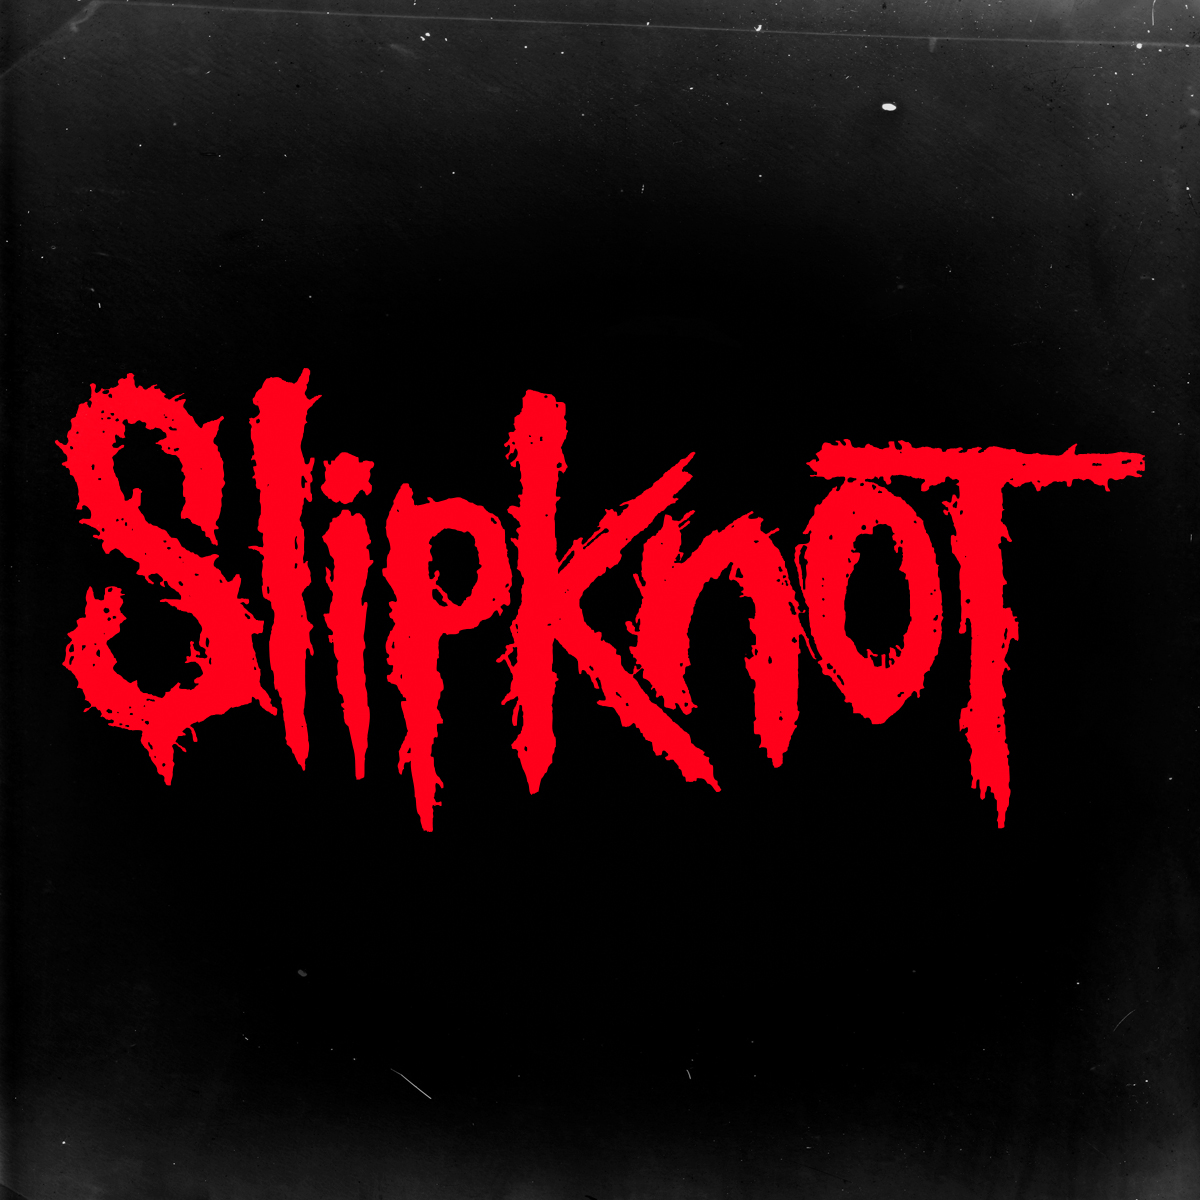 Логотип группы Slipknot